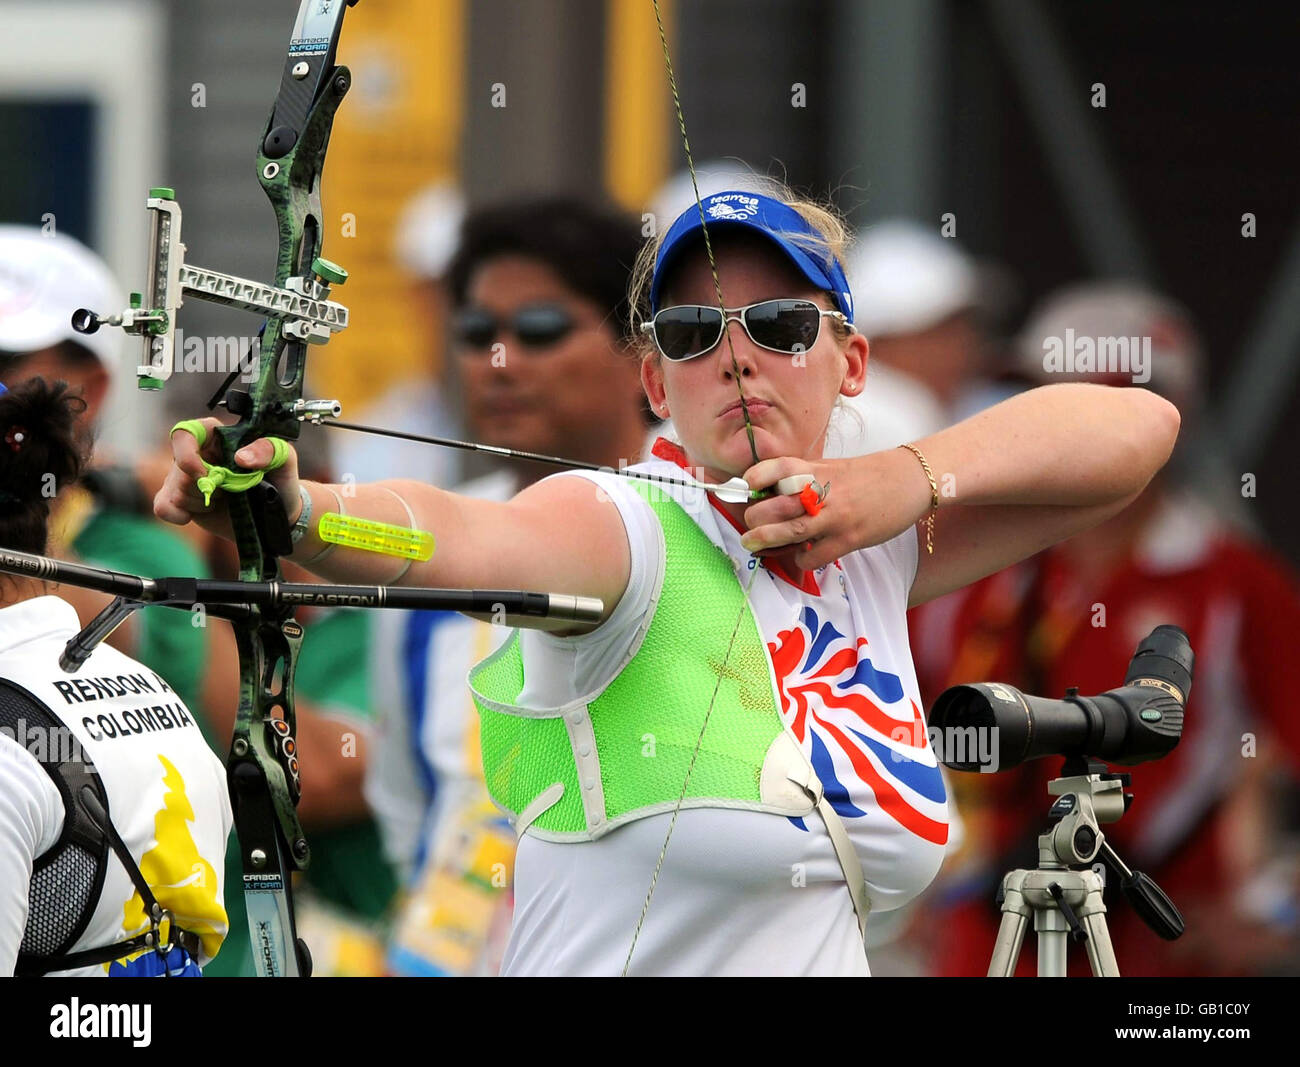 Die britische Charlotte Burgess in Aktion in der Frauen-Einzelrangliste Runde des Bogenschießwettbewerbs auf dem Pekinger Olympia-Feld Green Archery. Stockfoto